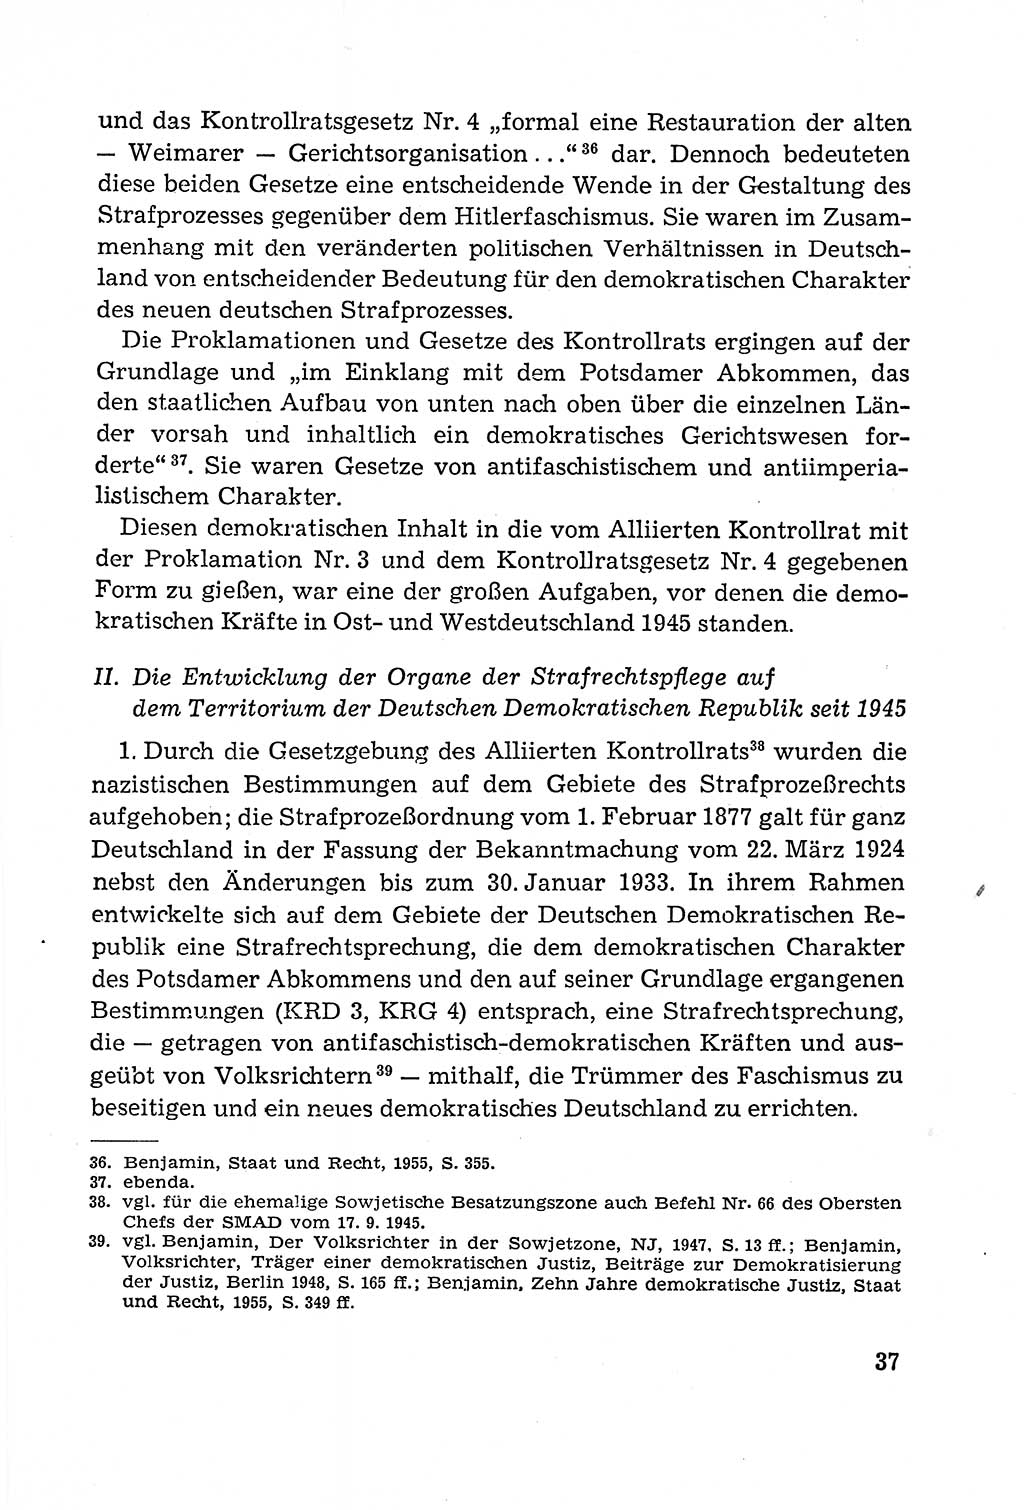 Leitfaden des Strafprozeßrechts der Deutschen Demokratischen Republik (DDR) 1959, Seite 37 (LF StPR DDR 1959, S. 37)